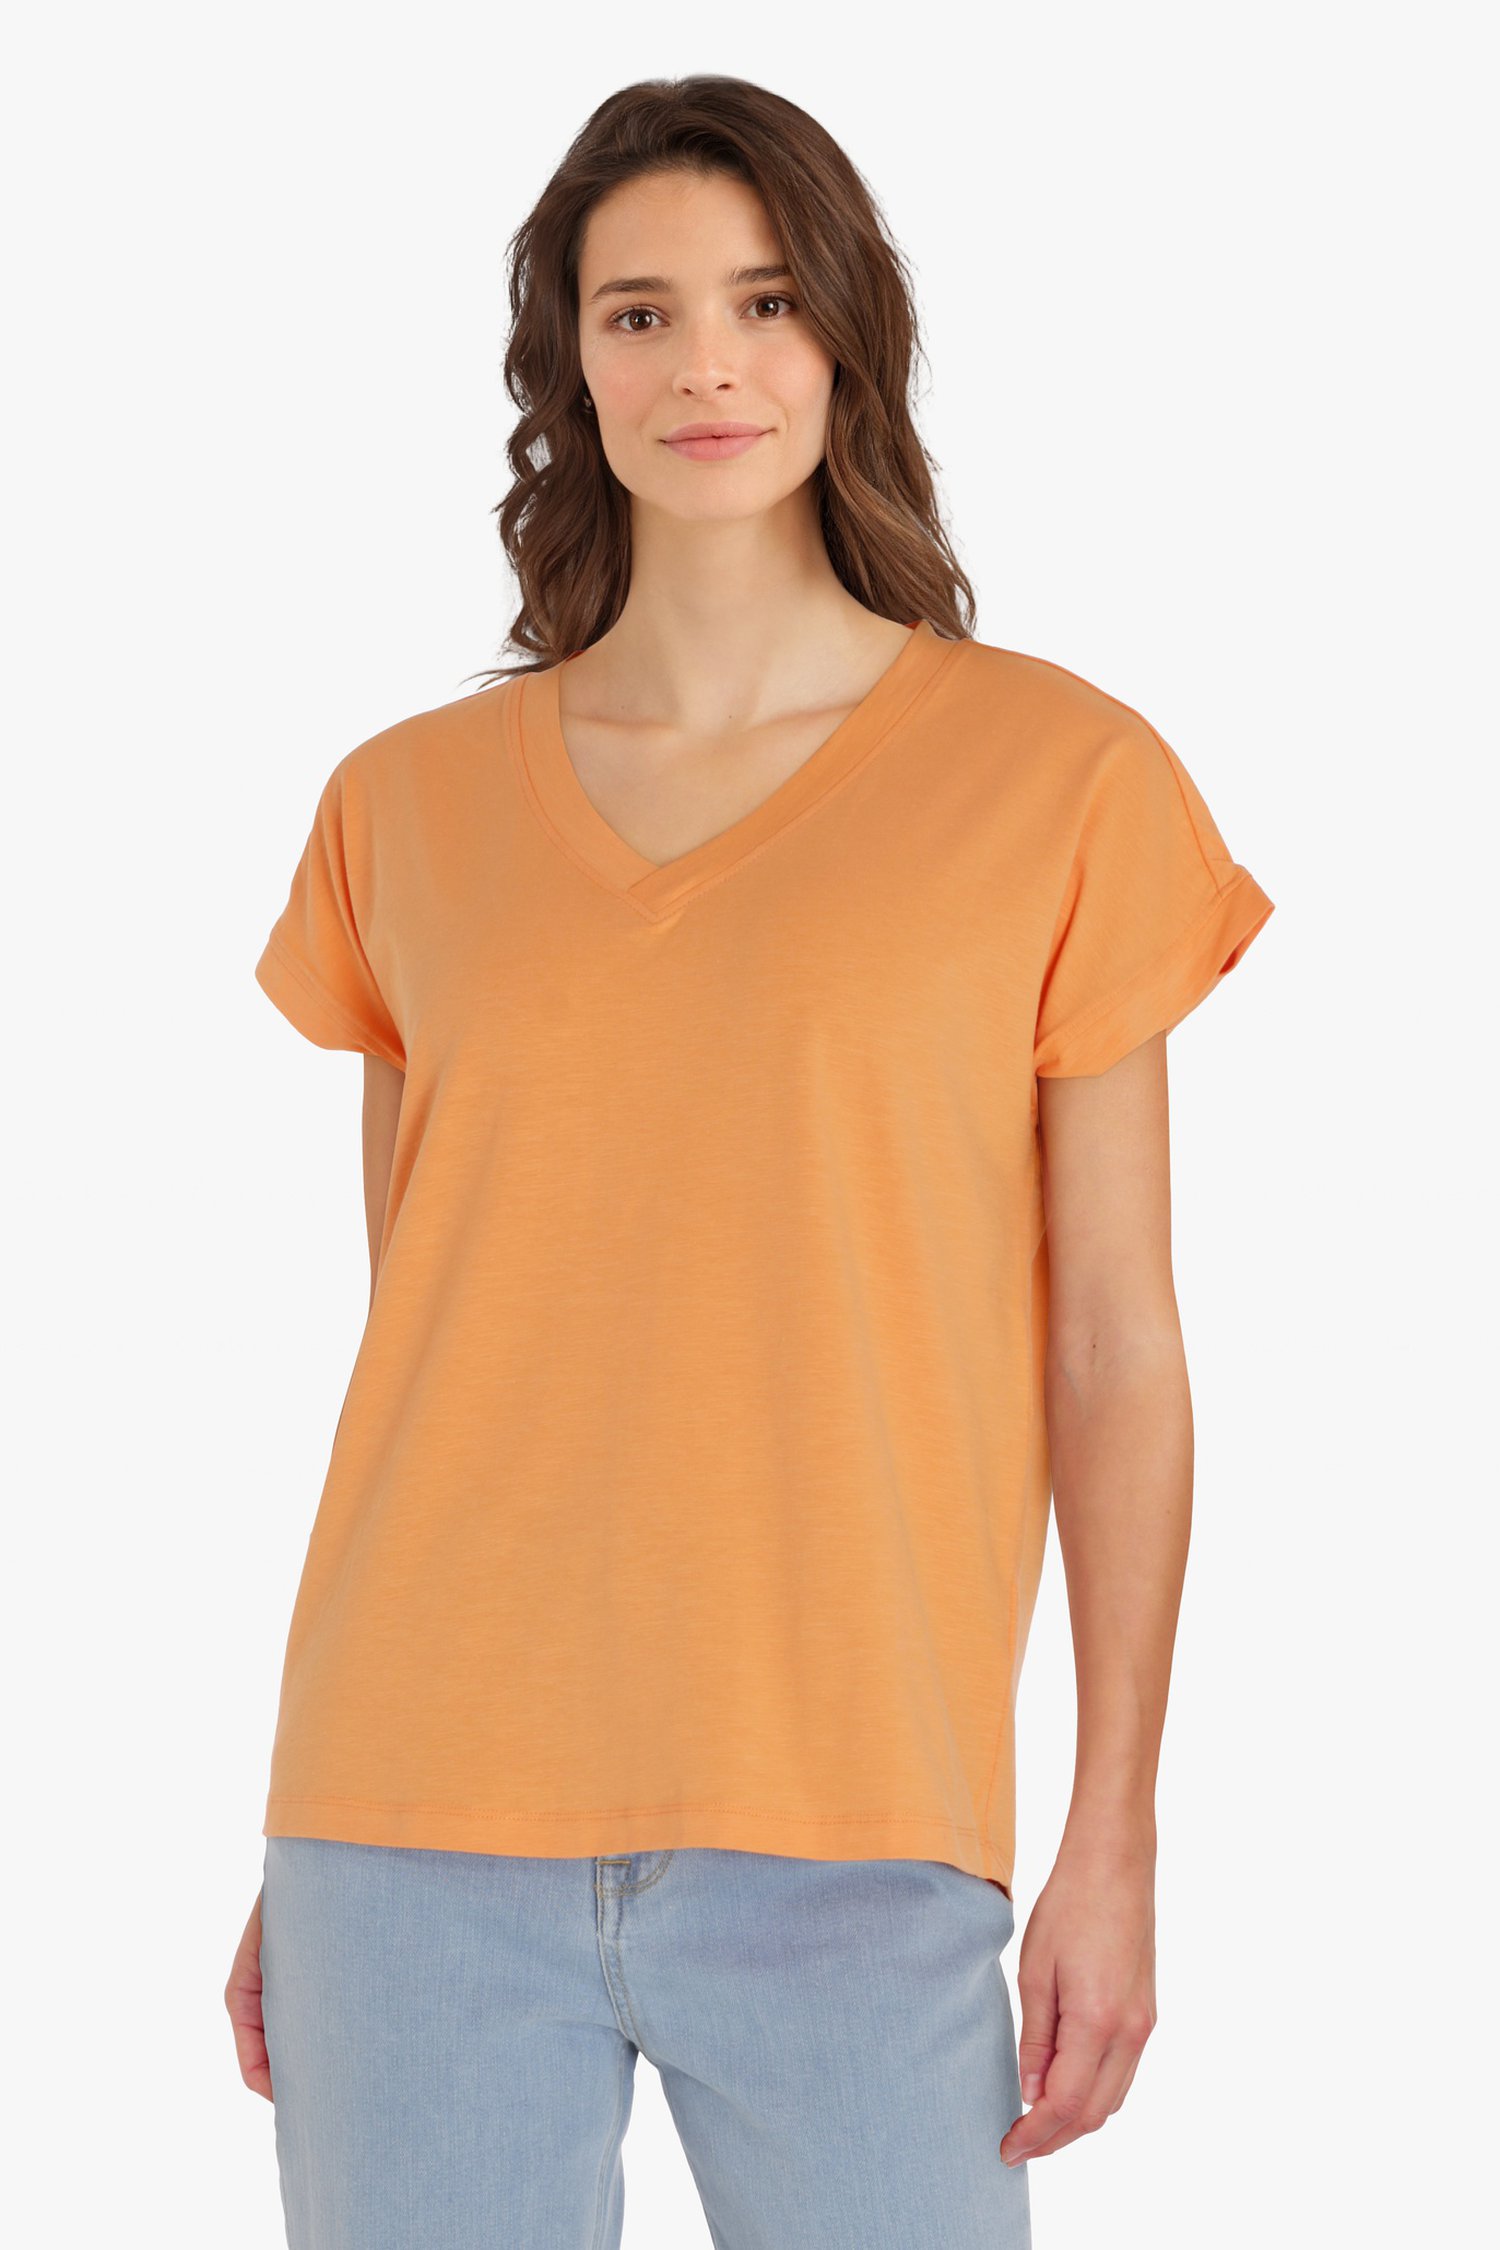 Kostuum verlangen teer Oranje T-shirt met V-hals van B. Coastline | 9624925 | e5